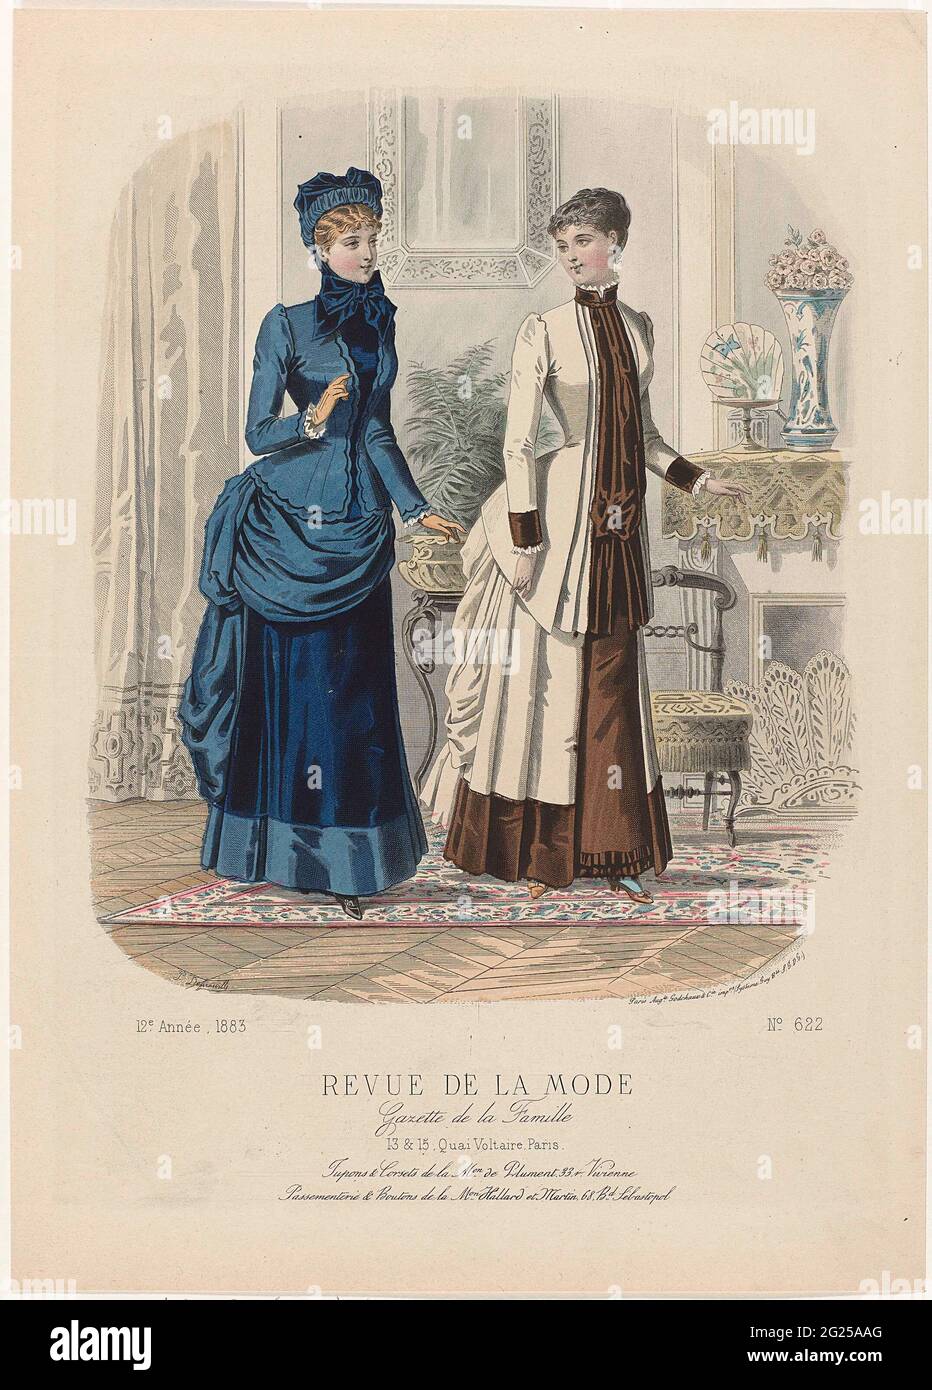 Revue de la fashion, Gazette de la Famille, Dimanche 2 Décembre 1883, 12th  annee, no. 622: Jupons & Corsets (...). Two women in an interior, standing  by a fireplace. Left: Visite juke